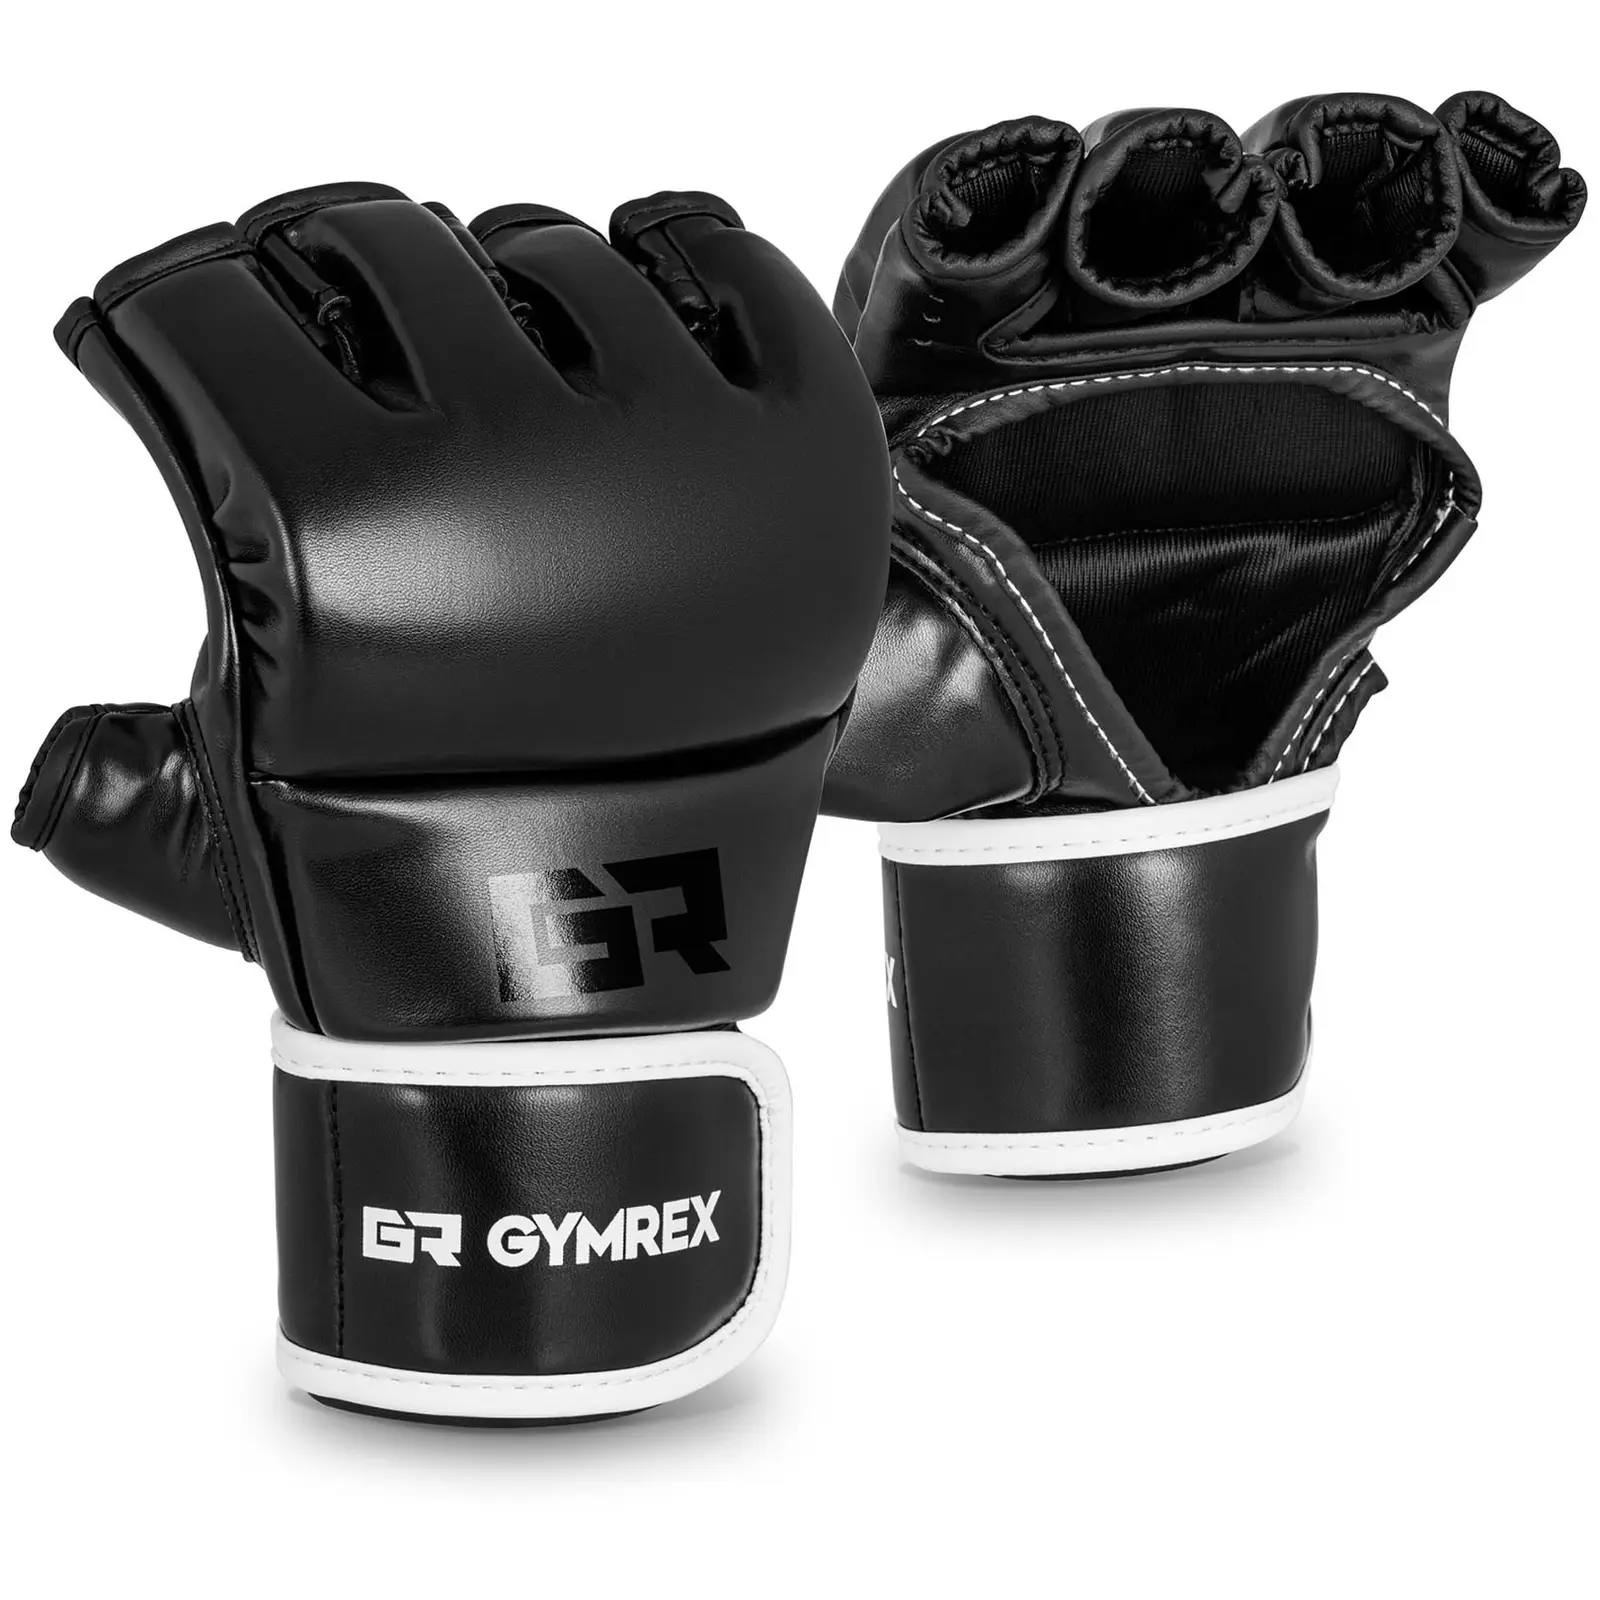 MMA rukavice vel. L/XL černé - Boxerské rukavice Gymrex